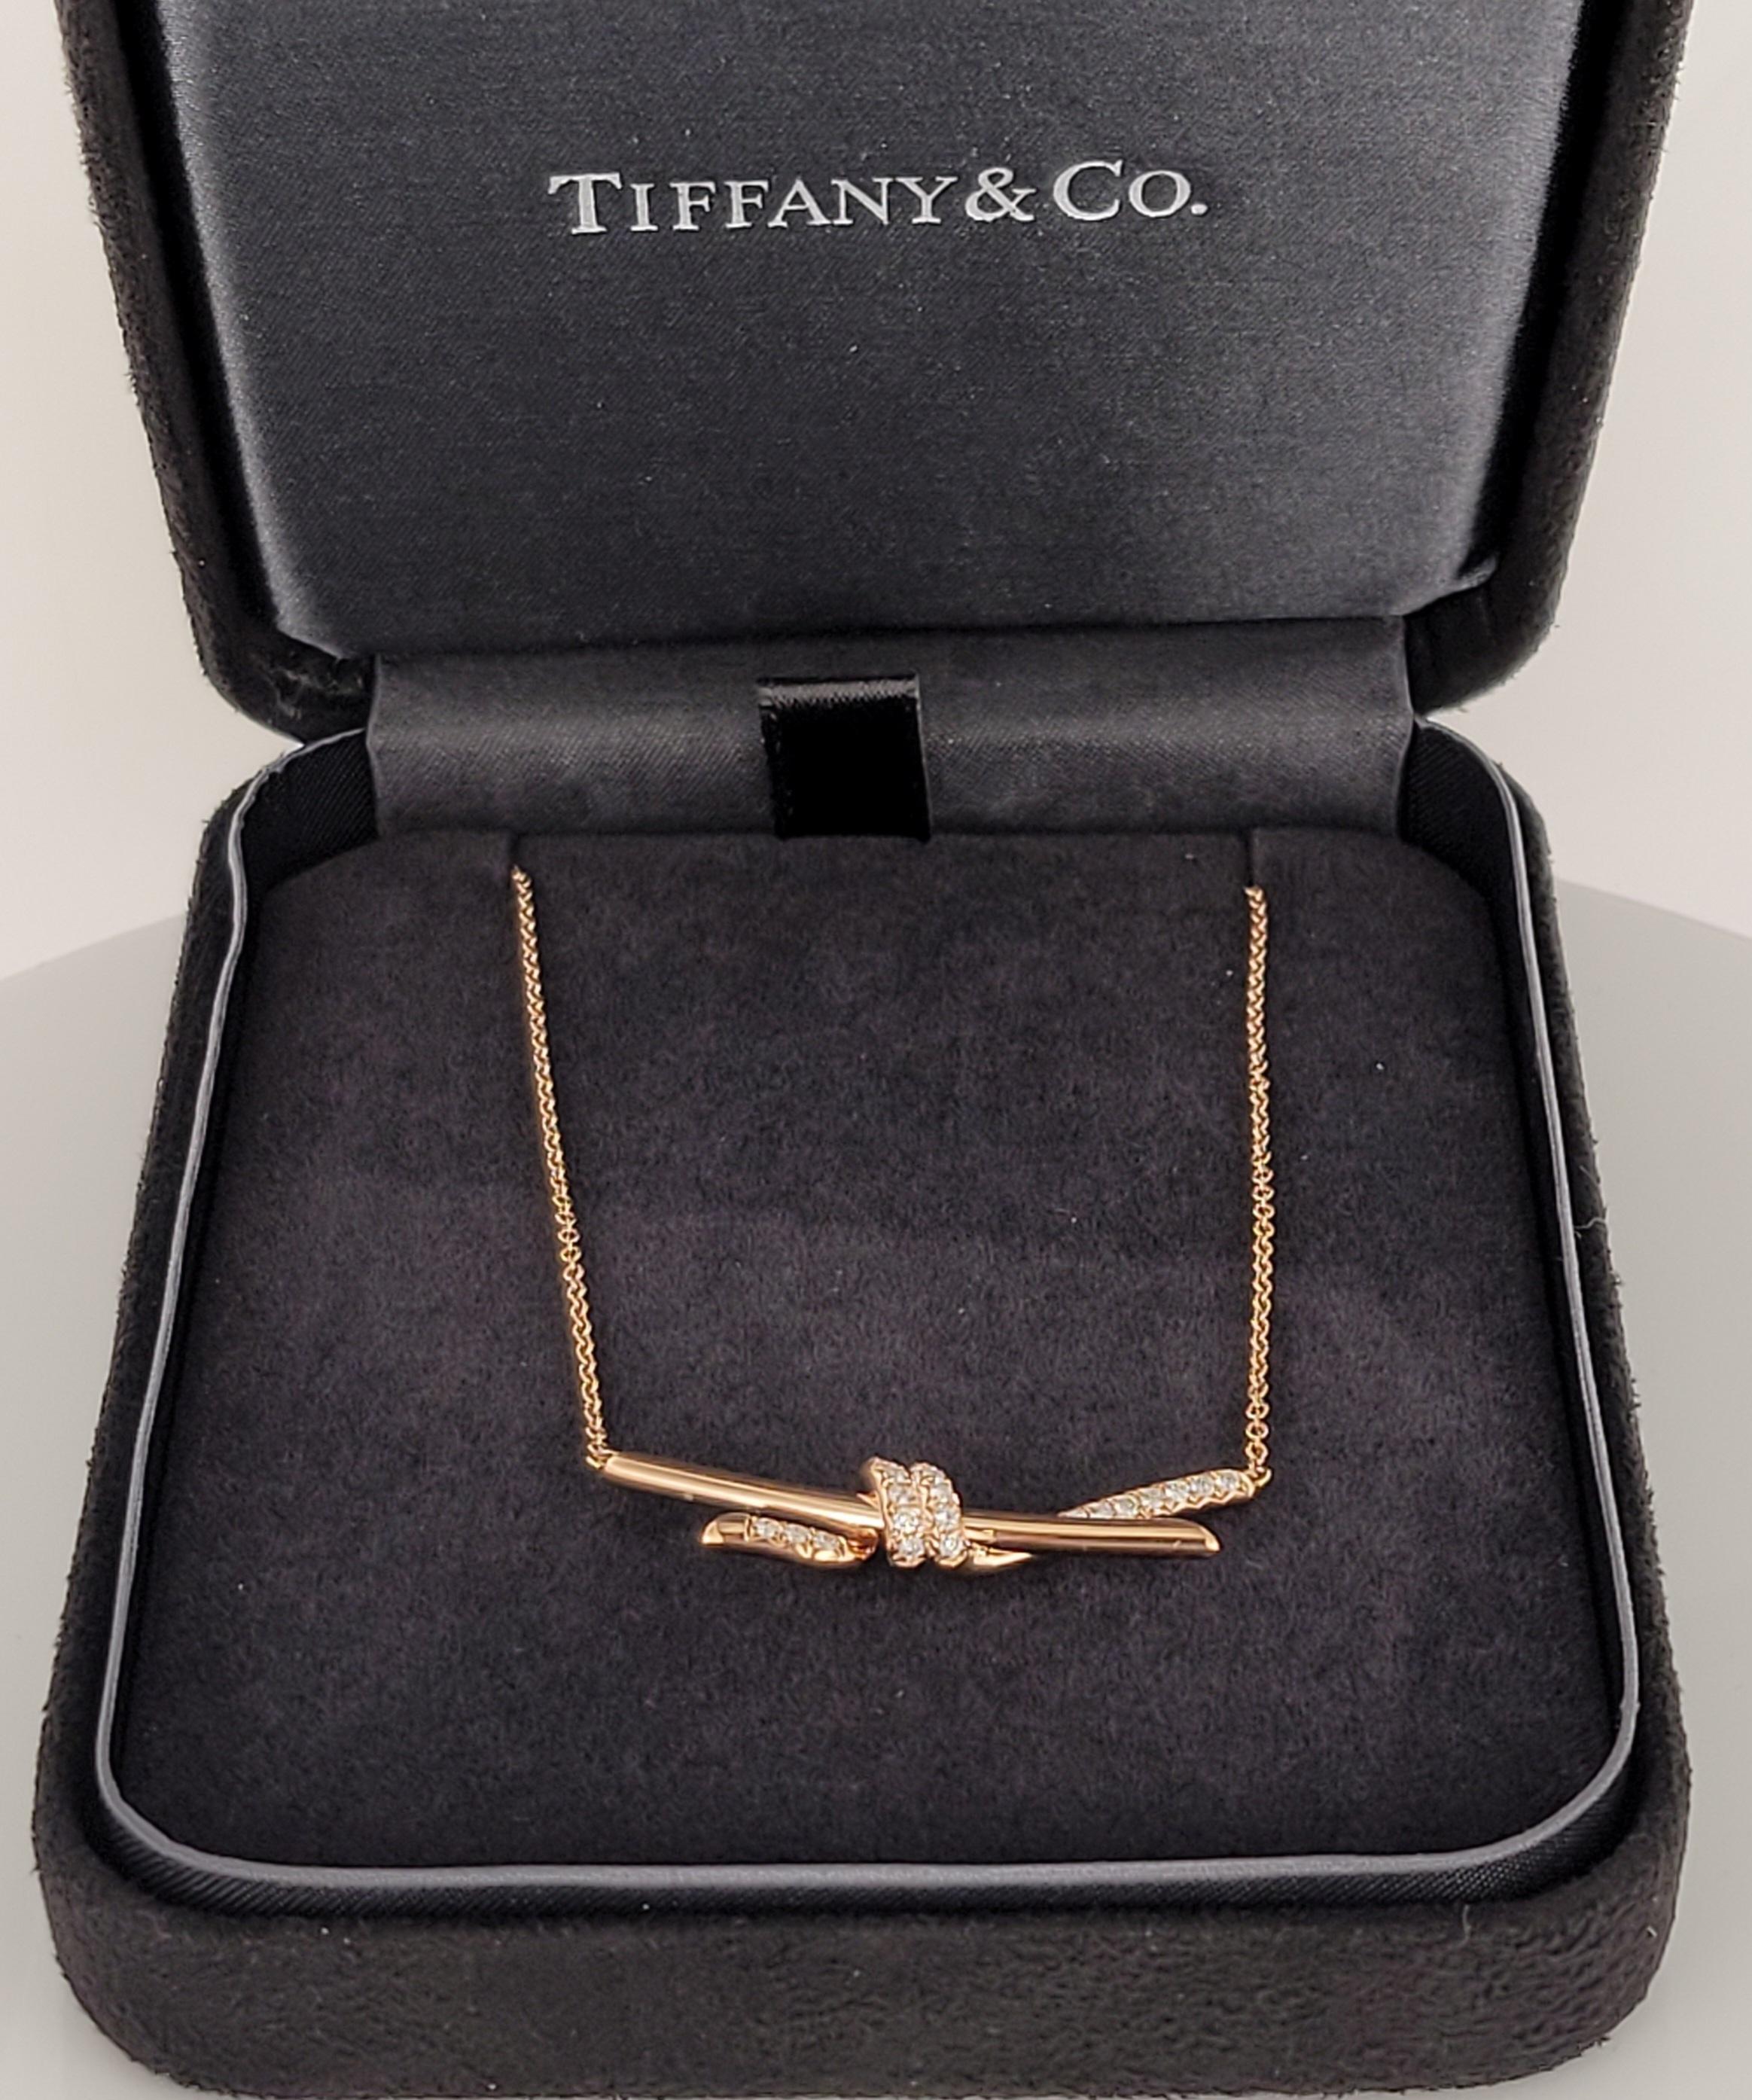 tiffany necklace